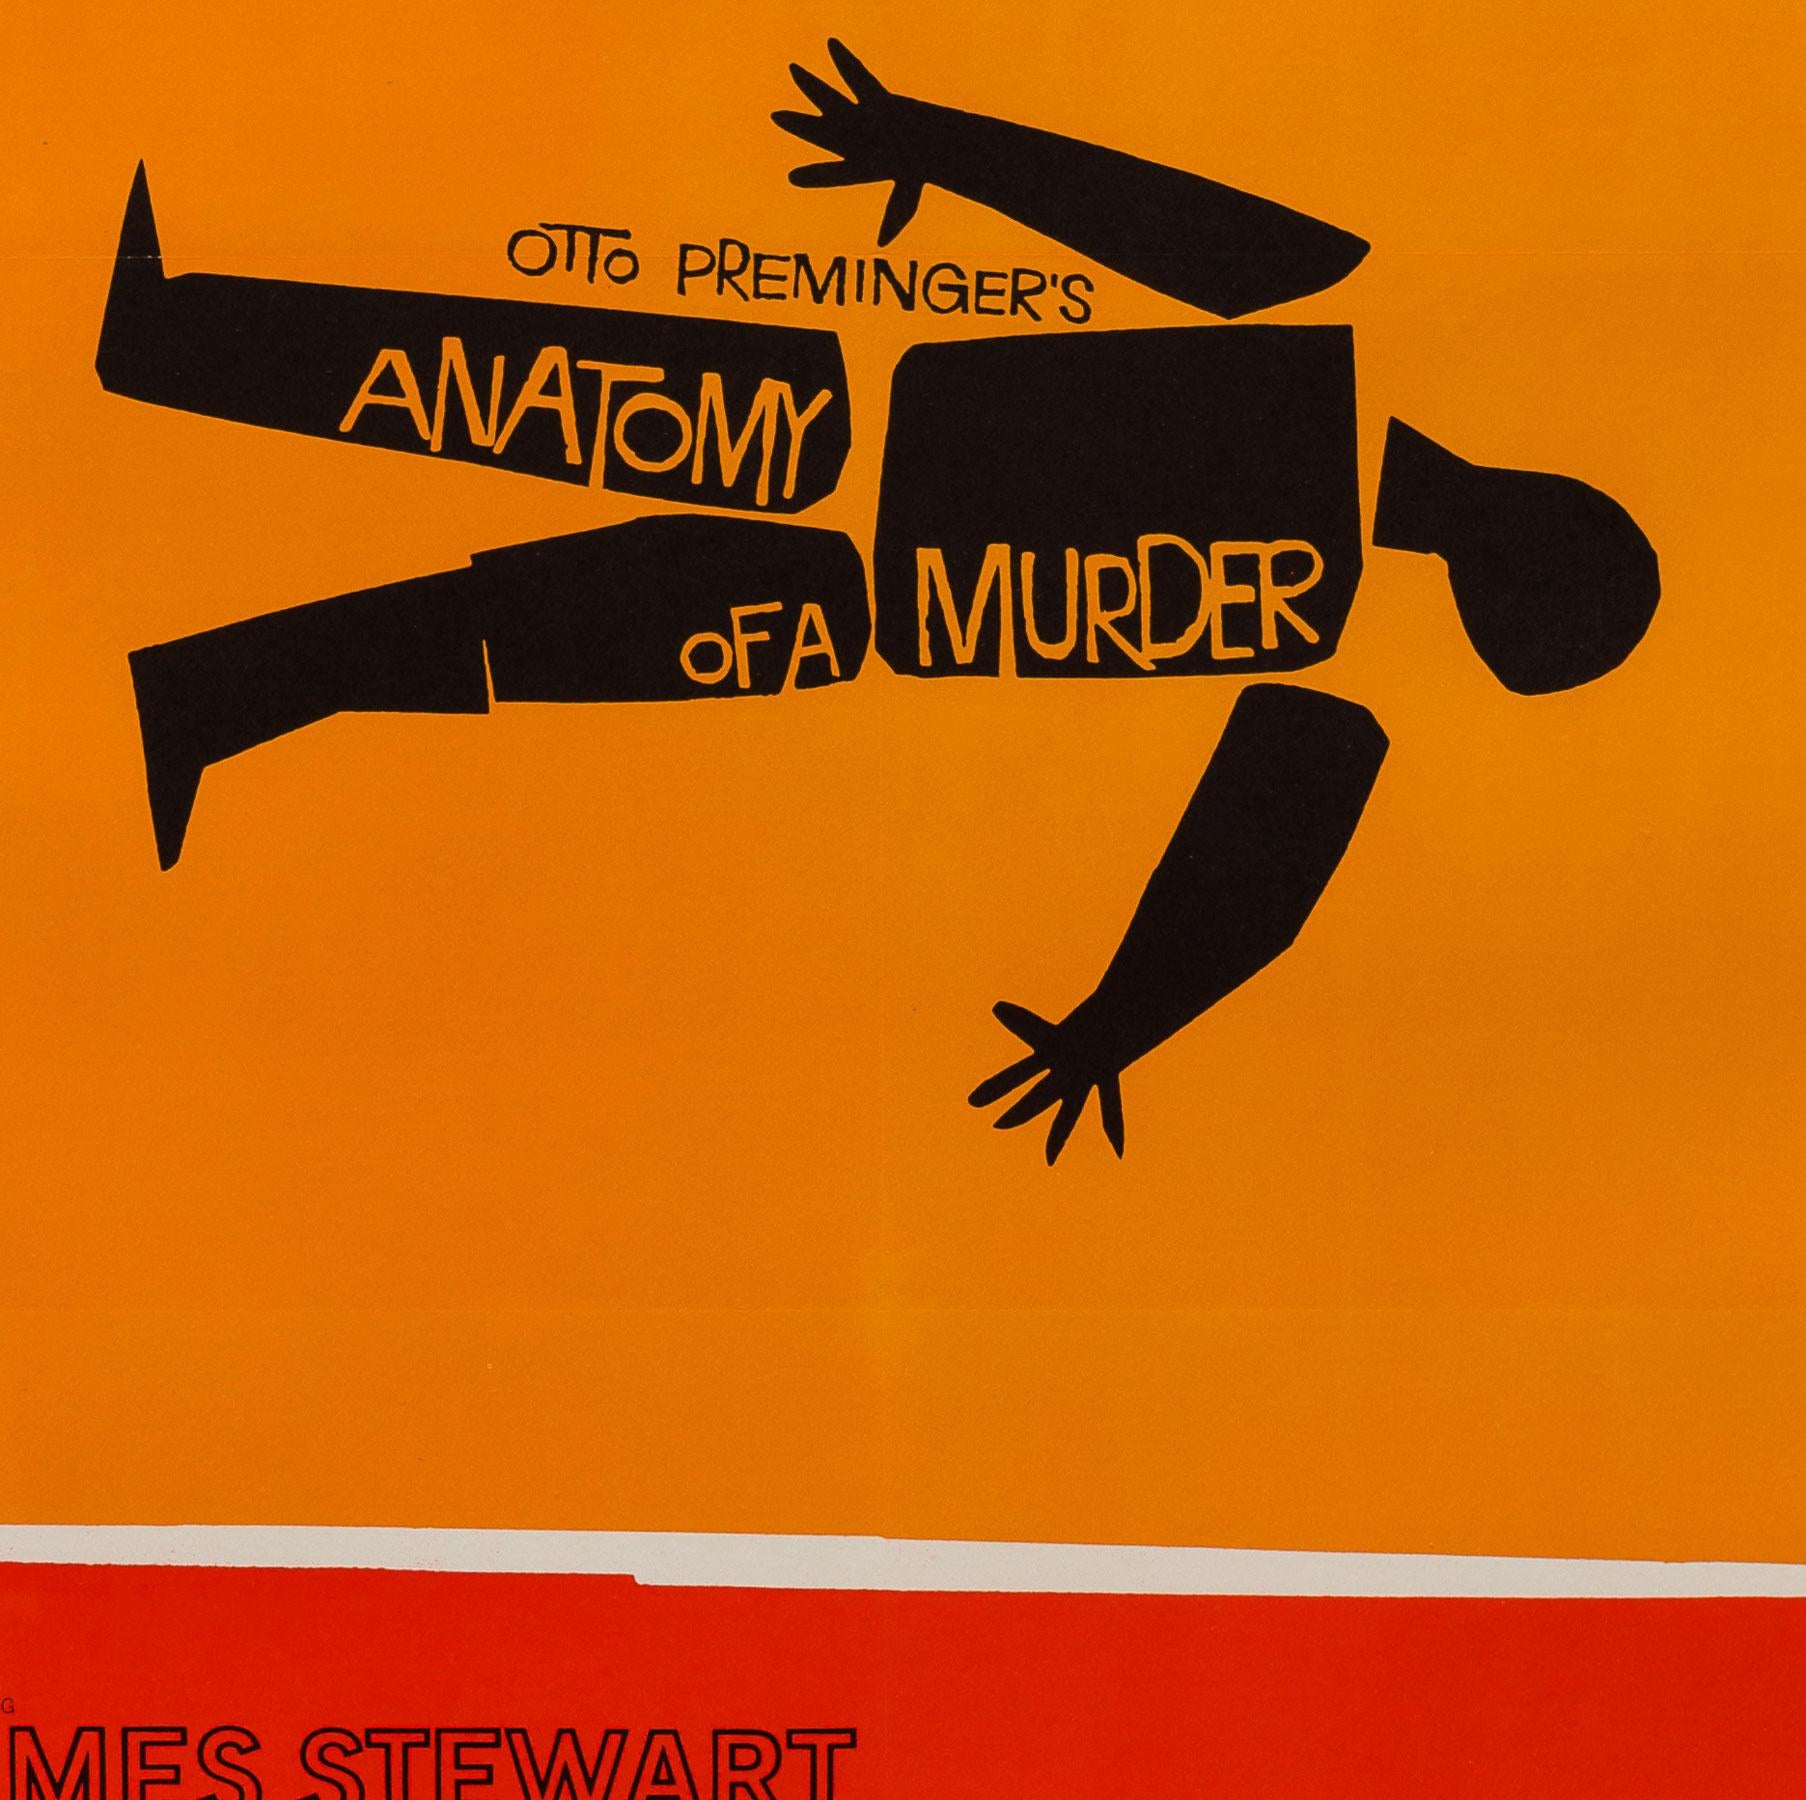 Original US-Filmplakat von Saul Bass für den Film Anatomie eines Mordes von 1959. 

Das Plakat Anatomy of a Murder mit seinen zeitlosen roten, orangefarbenen und schwarzen Grafiken gilt neben Vertigo als eines der besten Designs von Bass und ist